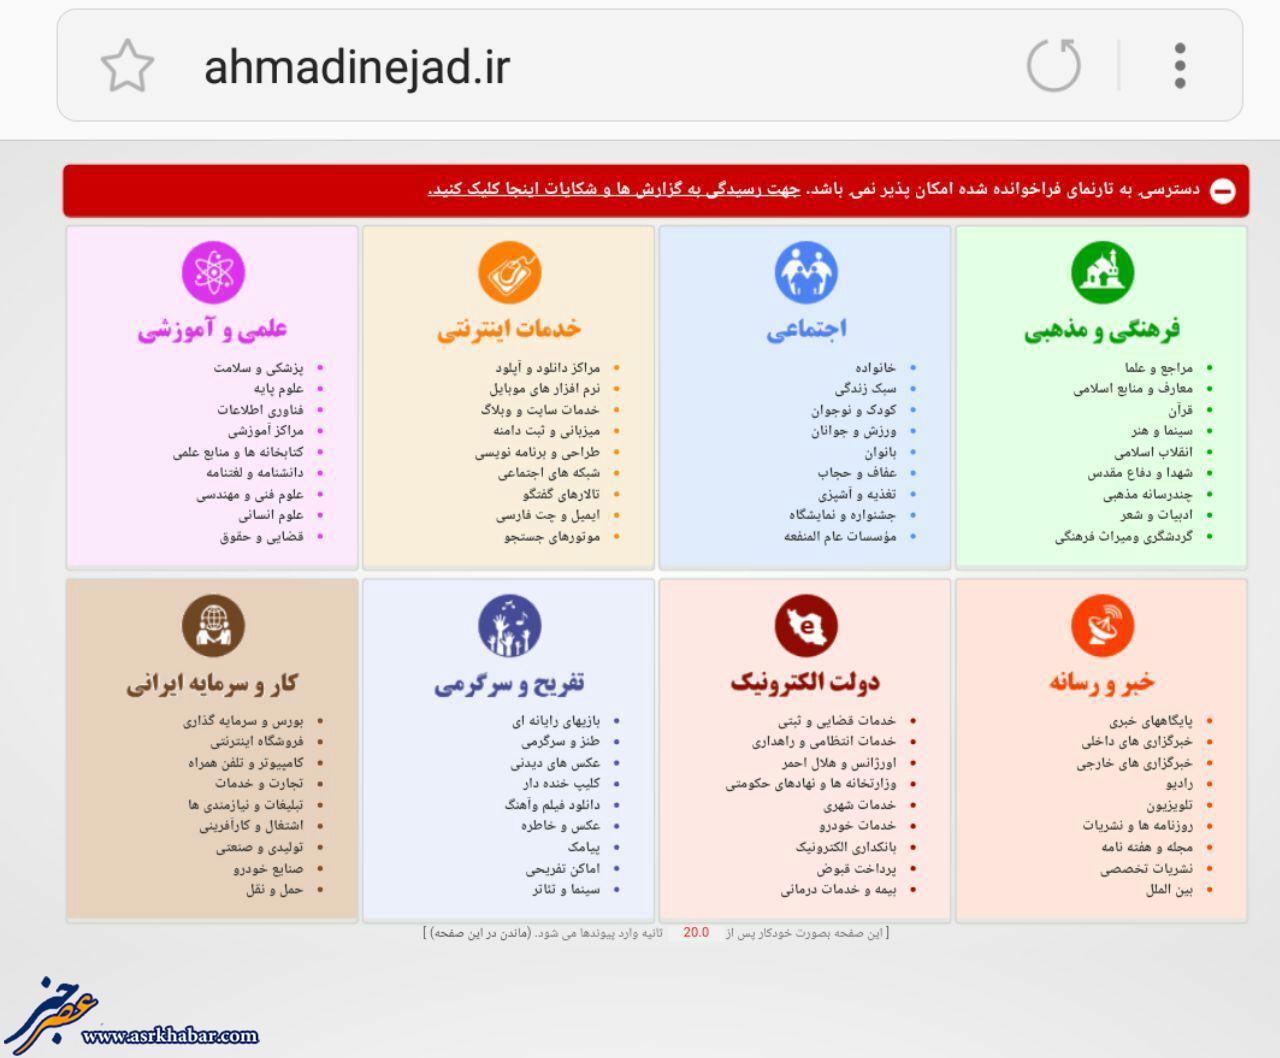 سایت احمدی نژاد فیلتر شد (+عکس)